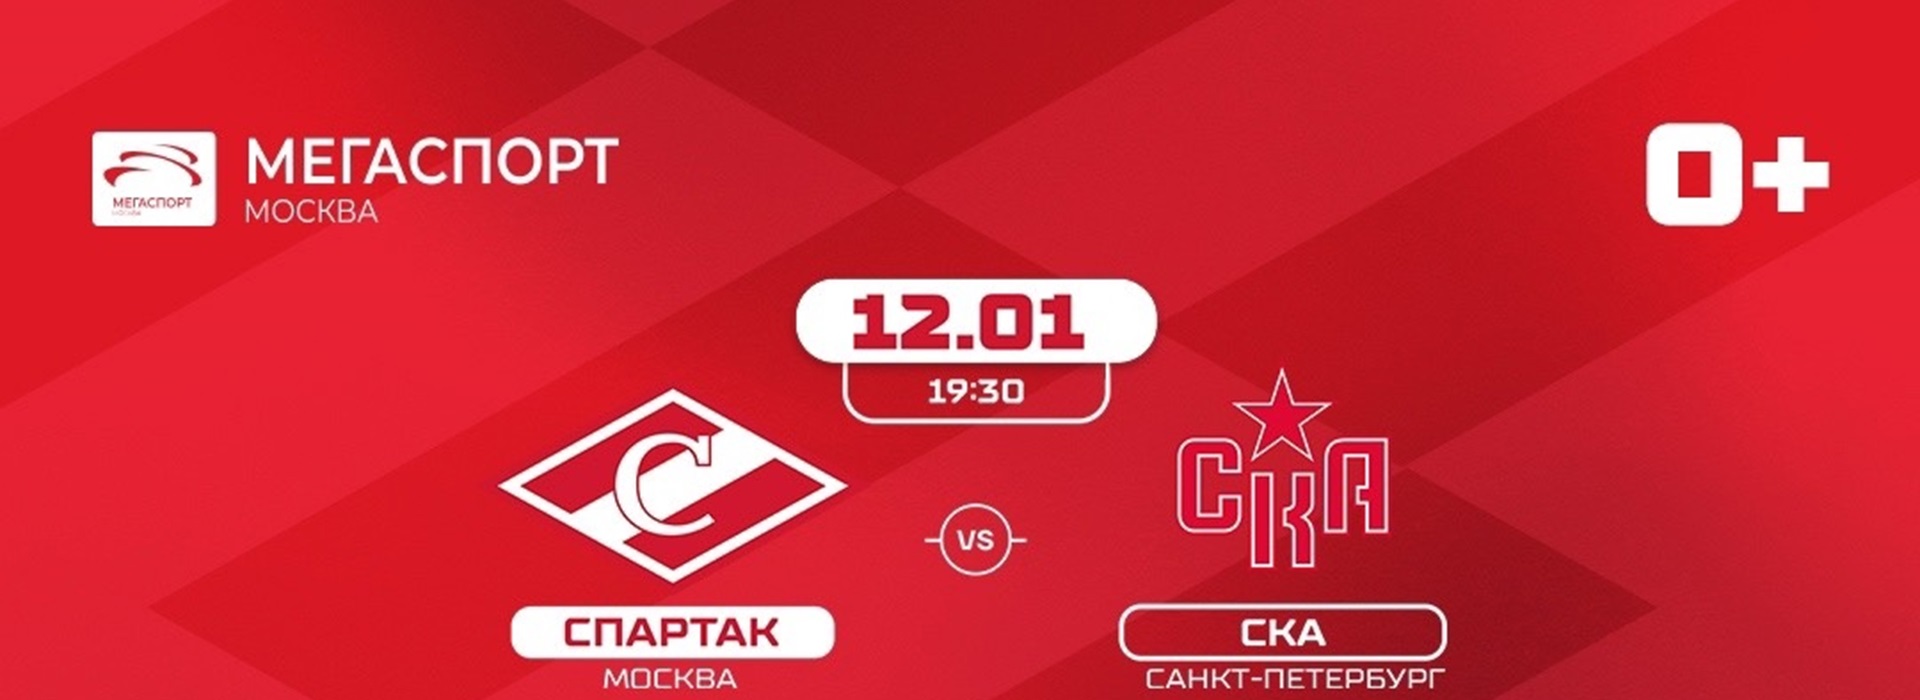 Билеты на домашние матчи «Спартака» в январе – уже в продаже!